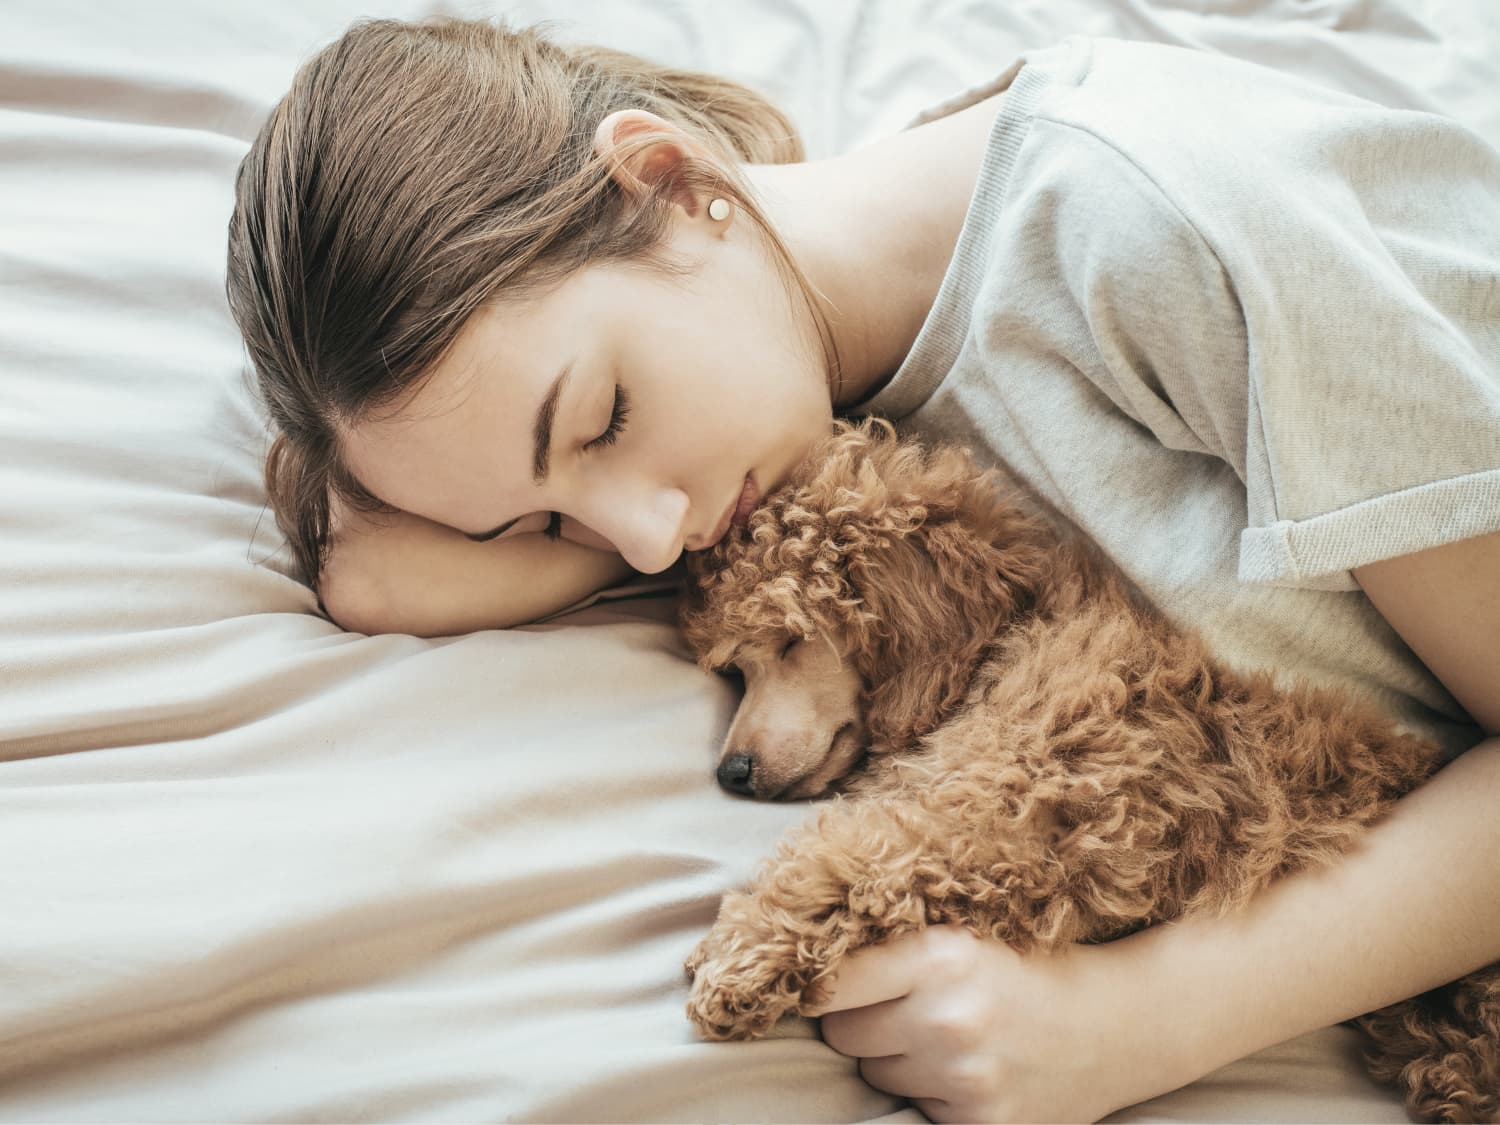 Women Sleep More Peacefully Next to Their Dog